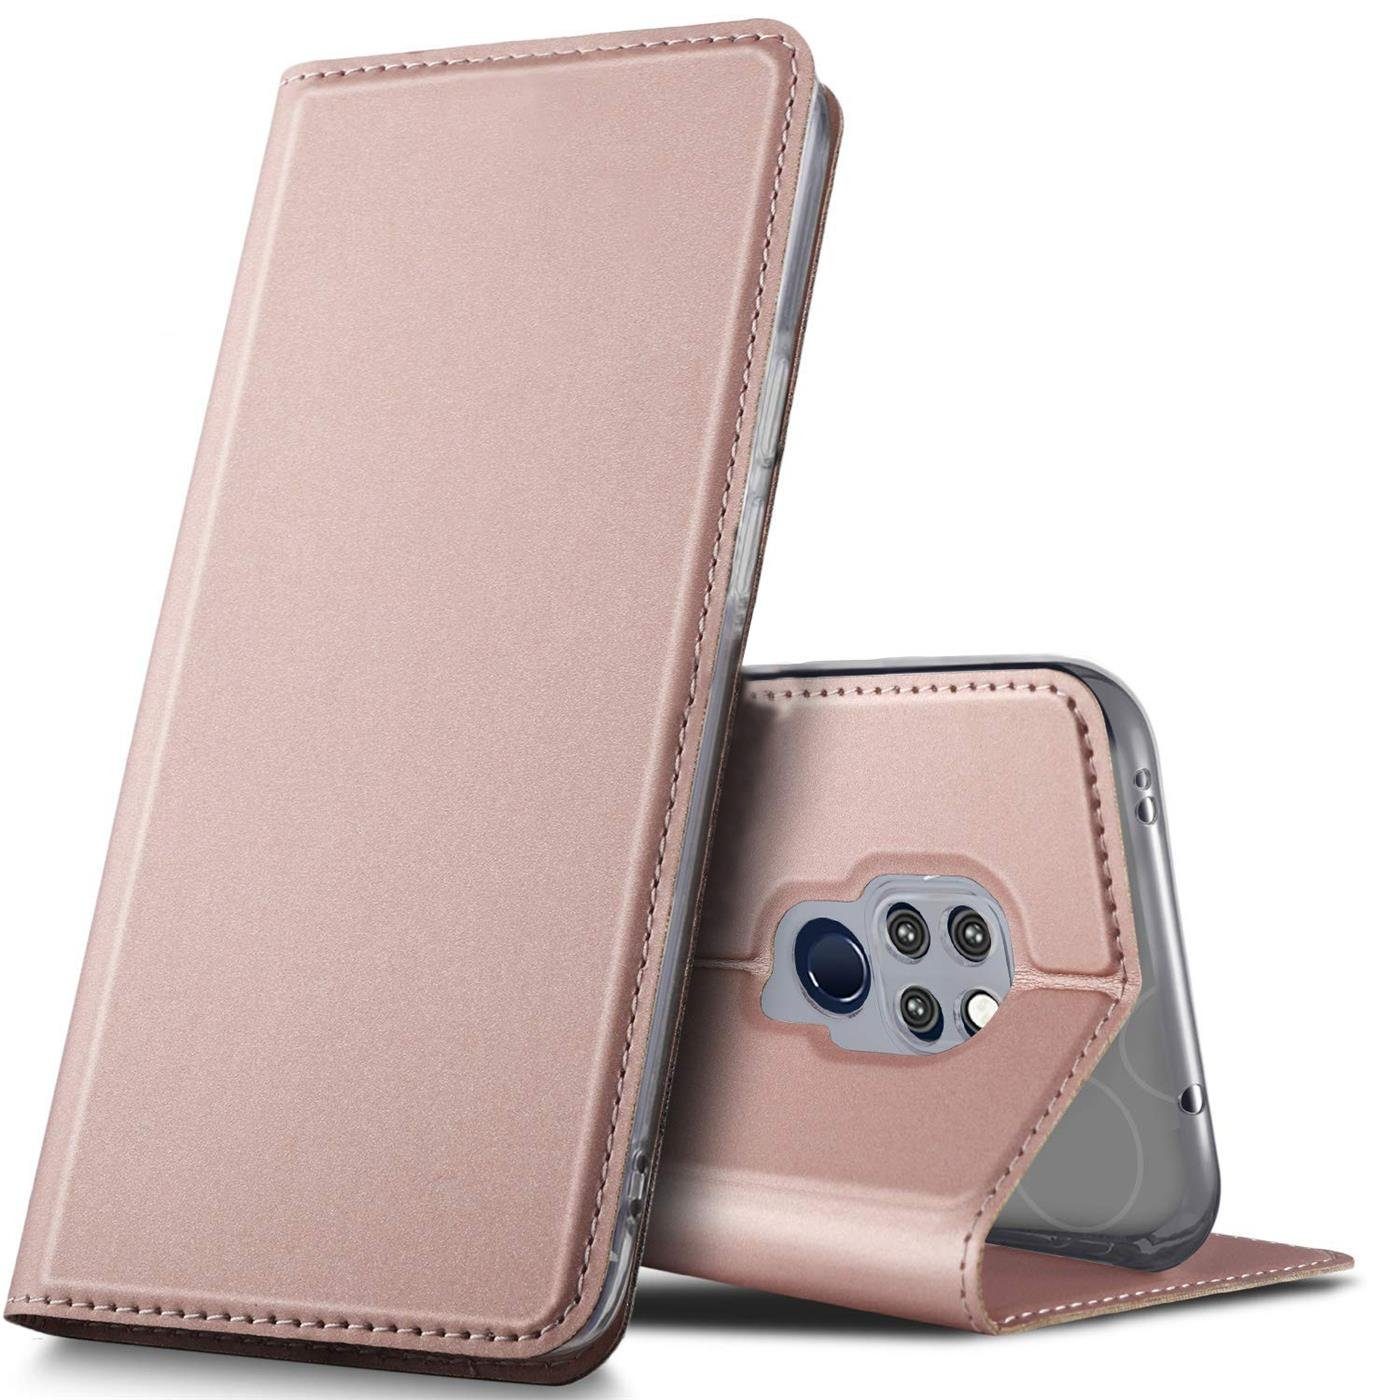 CoolGadget Handyhülle Magnet Case Handy Tasche für Huawei Mate 20 6,5 Zoll,  Hülle Klapphülle Ultra Slim Flip Cover für Mate 20 Schutzhülle